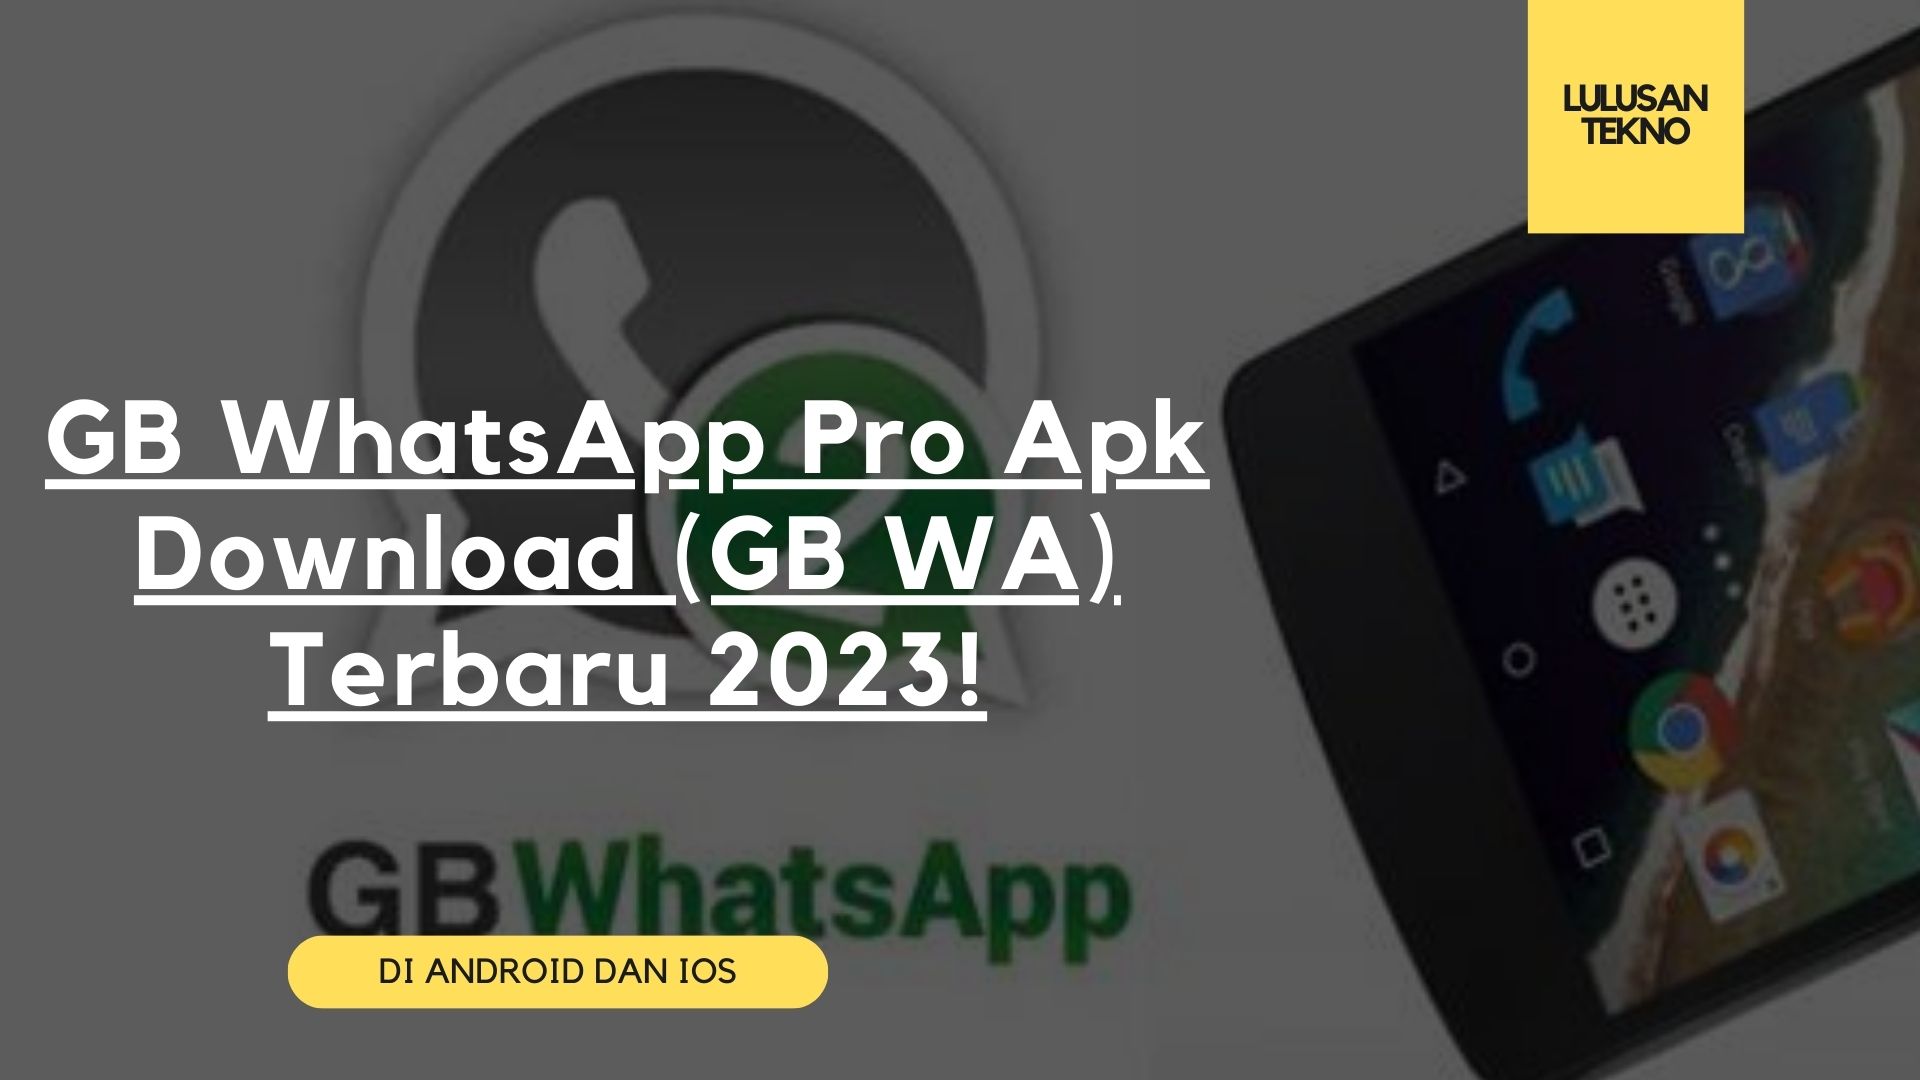 GB WhatsApp Pro Apk Download (GB WA) Terbaru 2023!